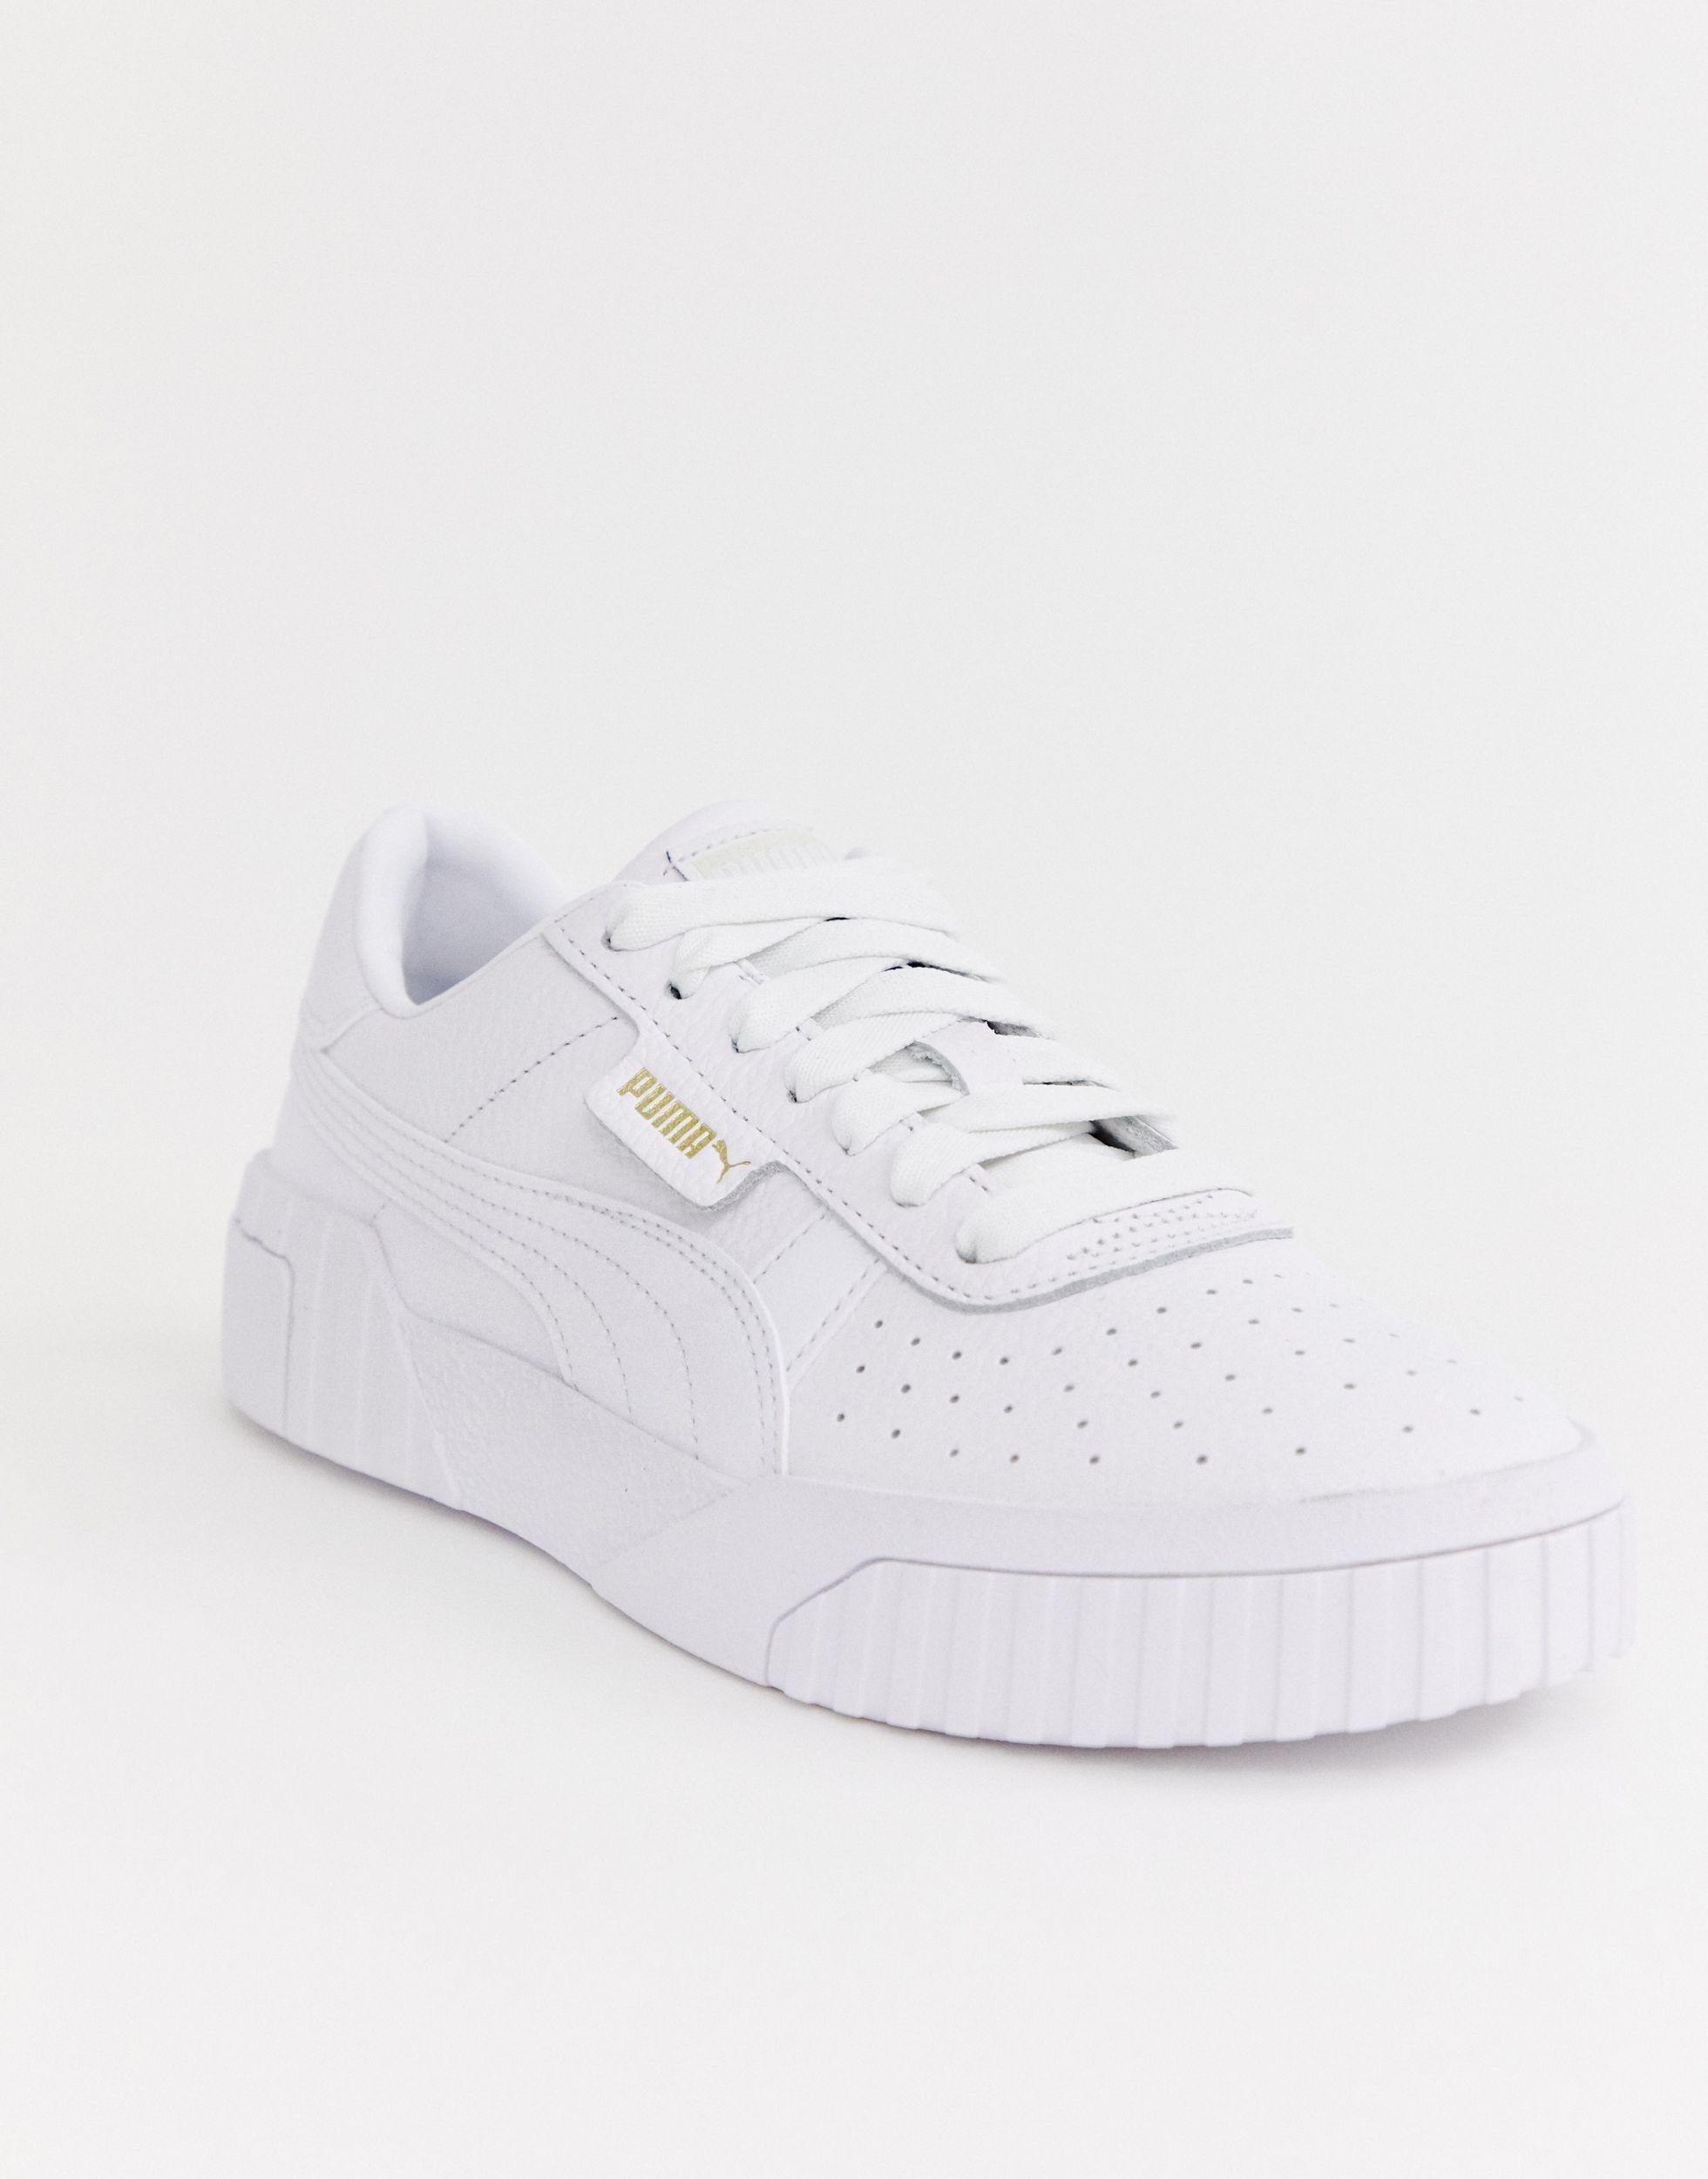 PUMA Cali Sneakers in White | Lyst Canada